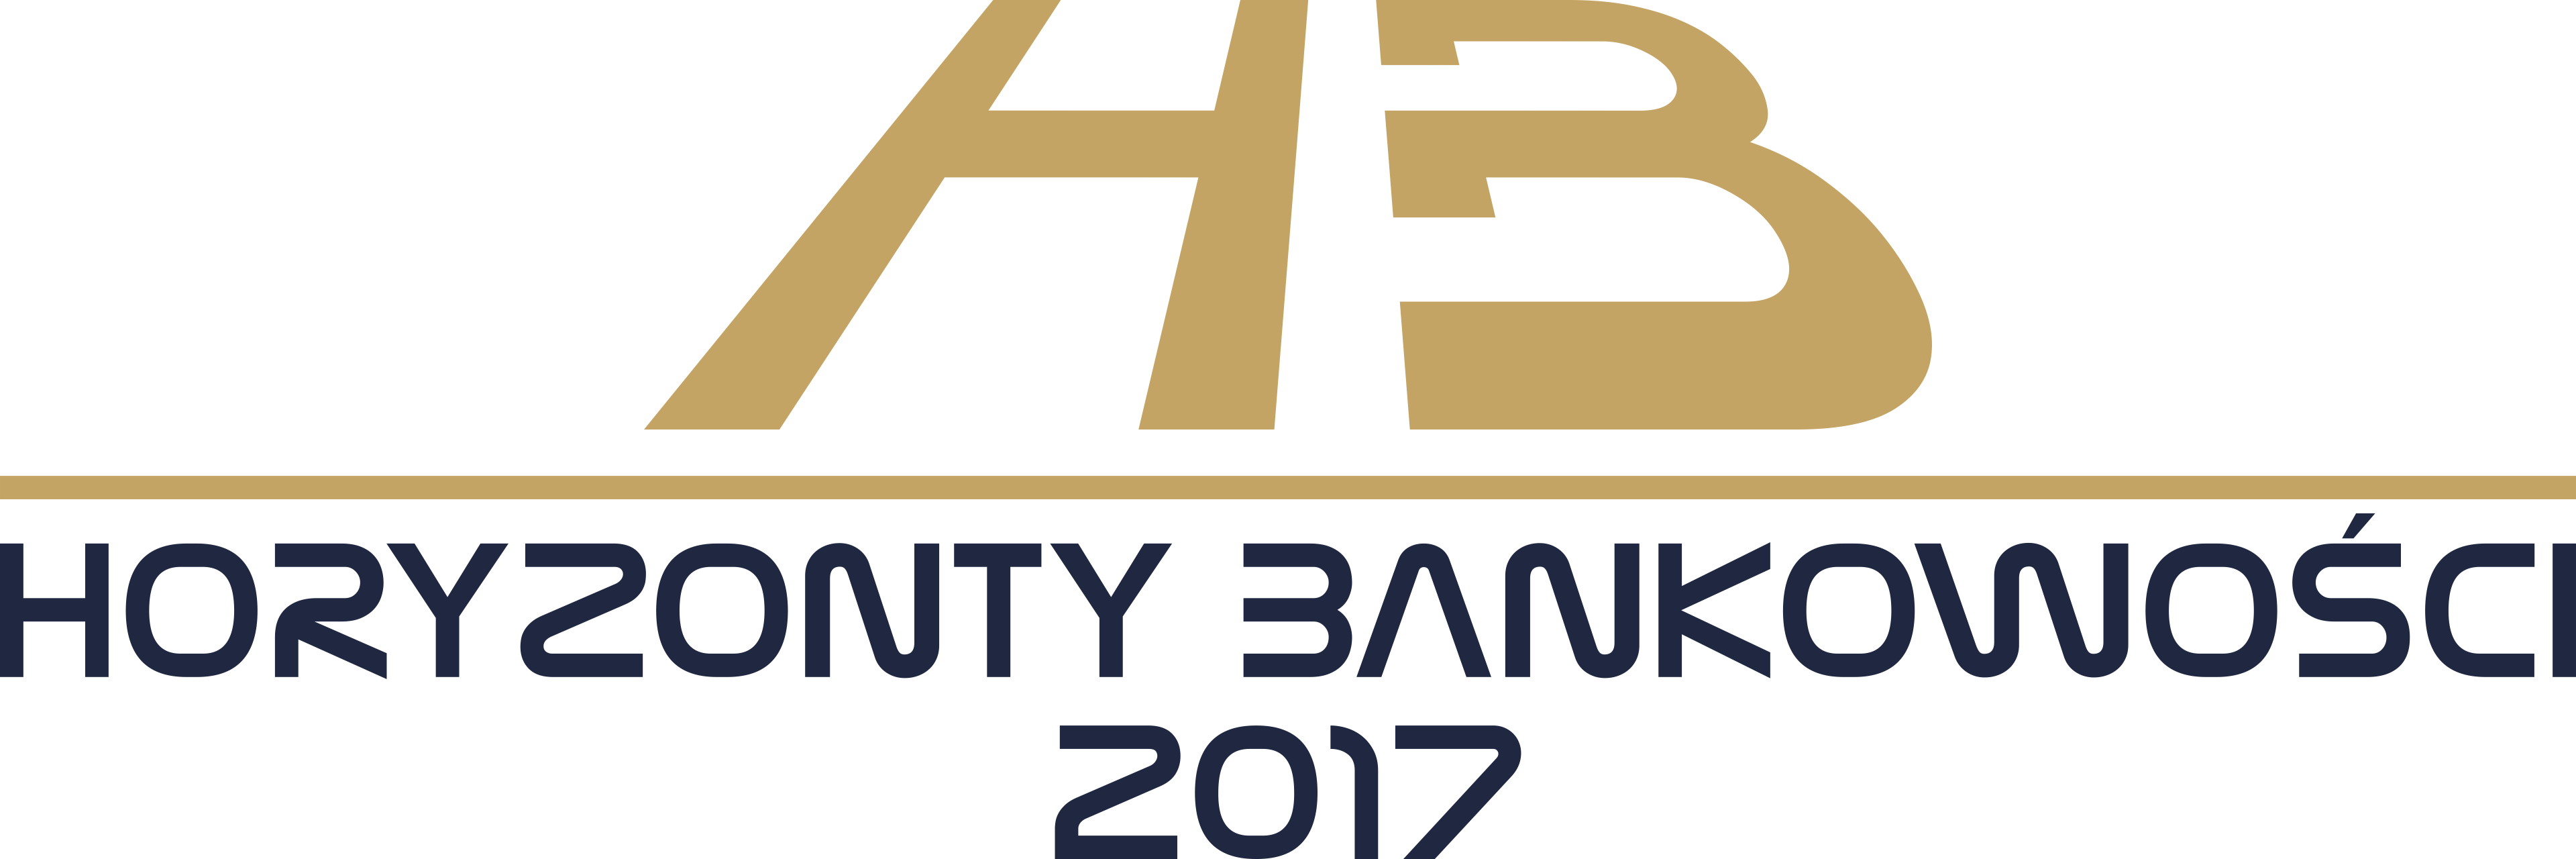 Horyzonty Bankowości 2017